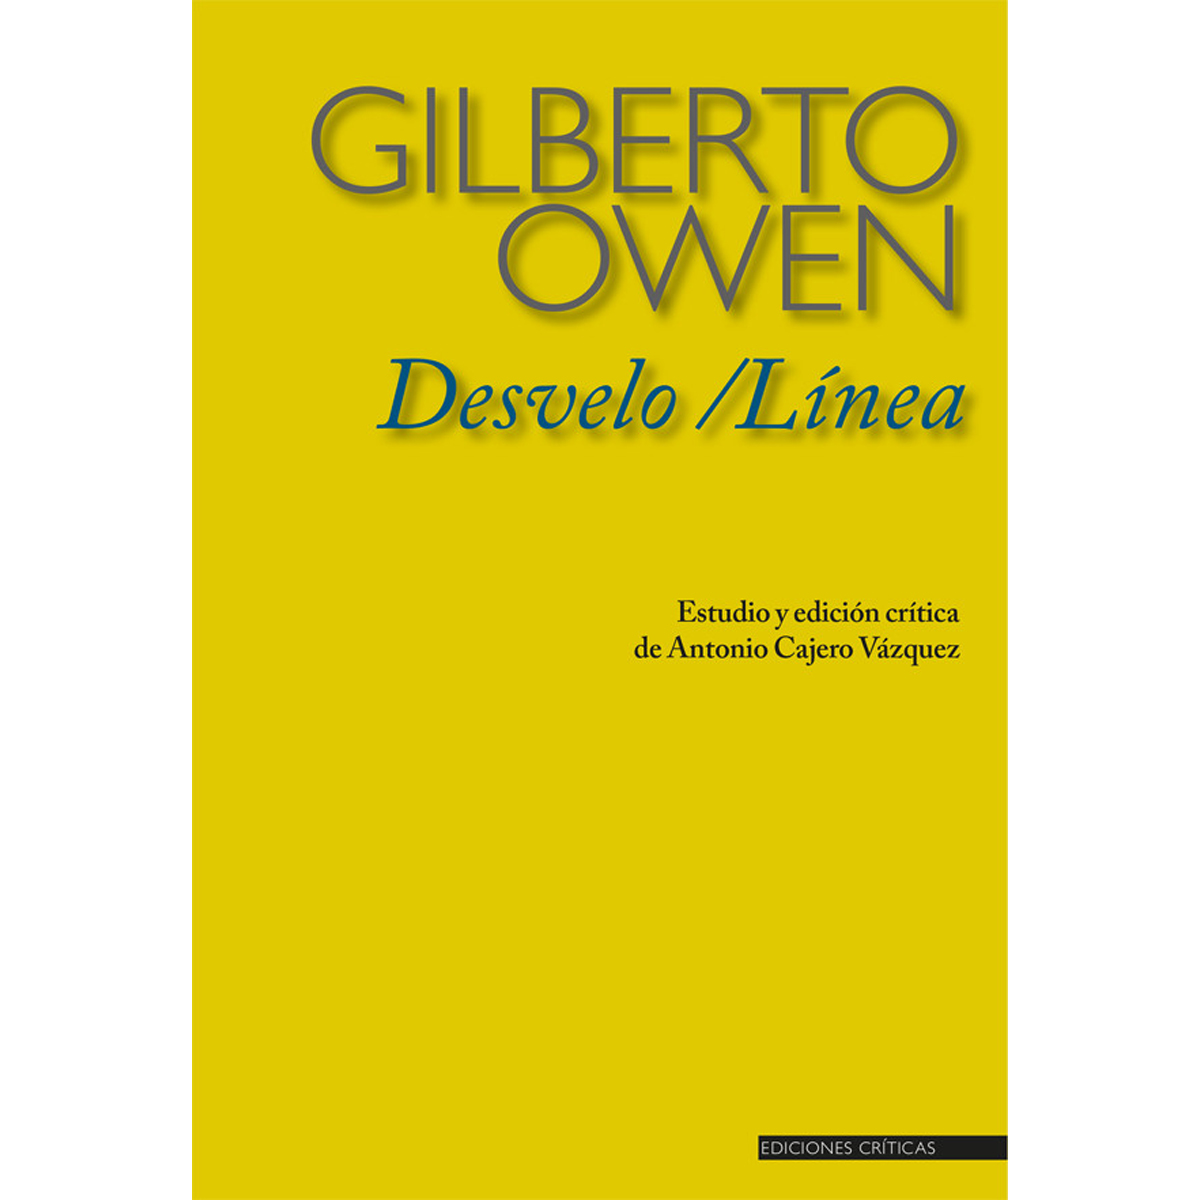 Desvelo / Línea de Gilberto Owen